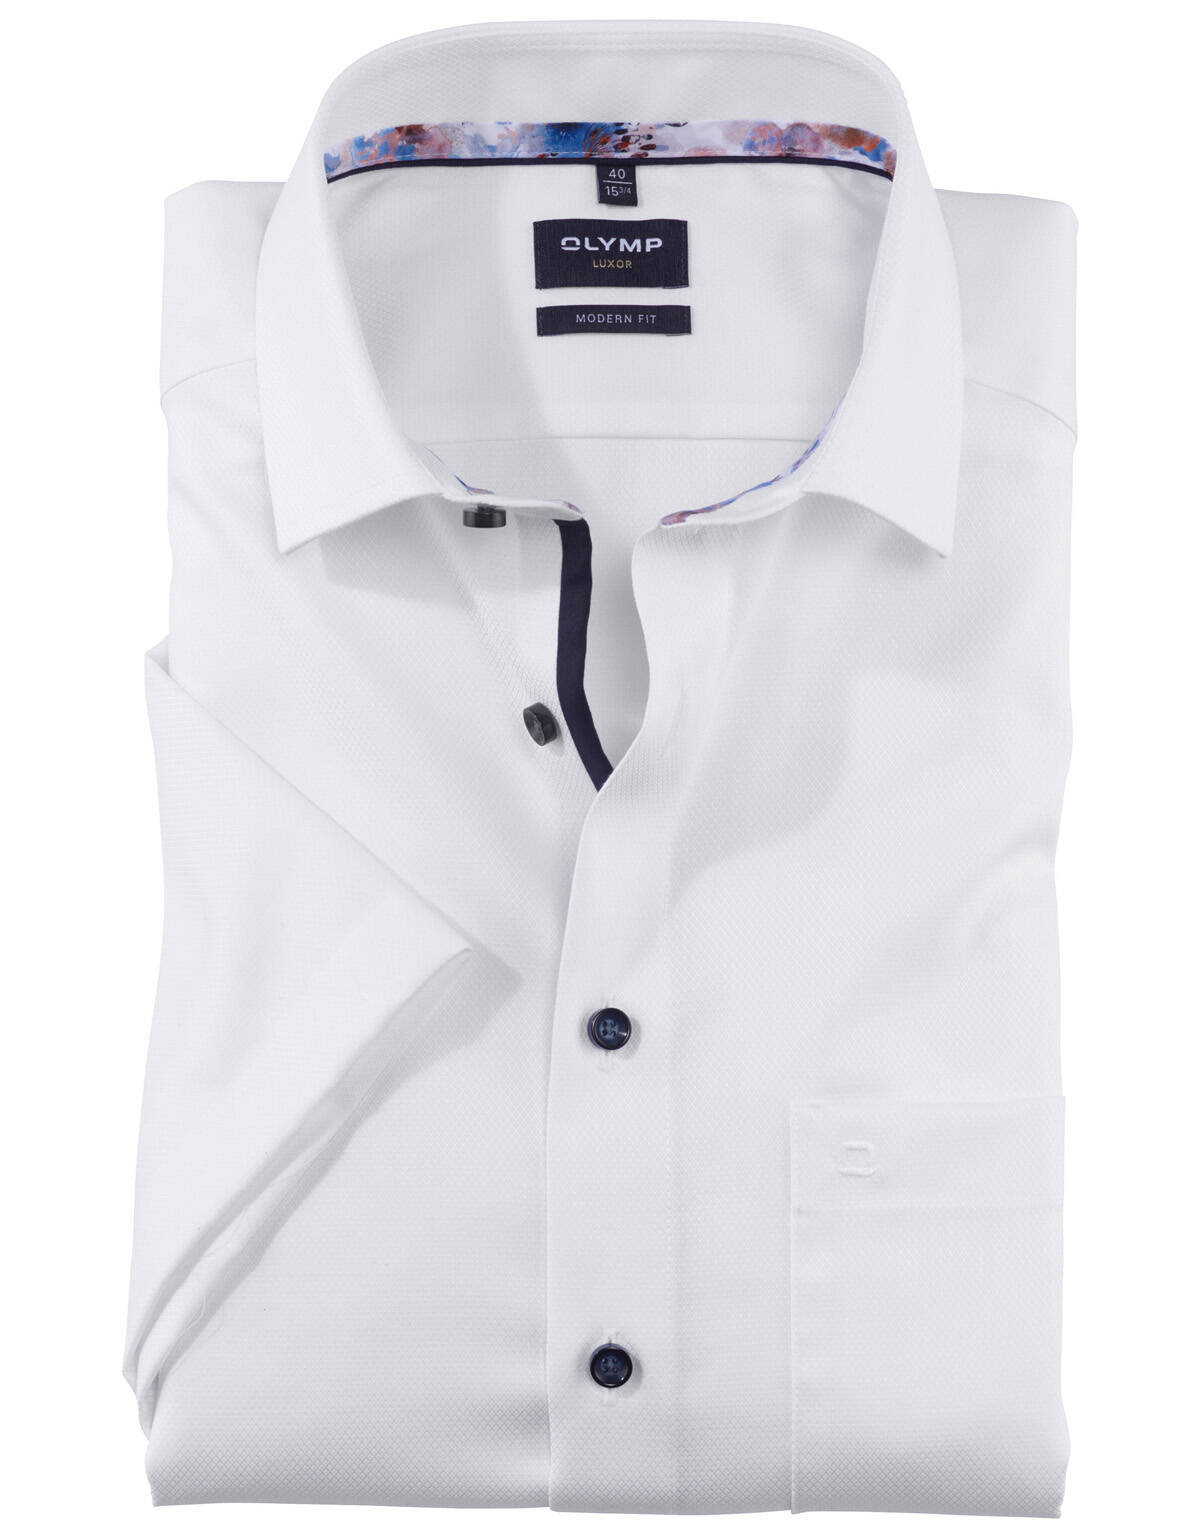 Рубашка мужская OLYMP Luxor, modern fit, фактурная[БЕЛЫЙ]